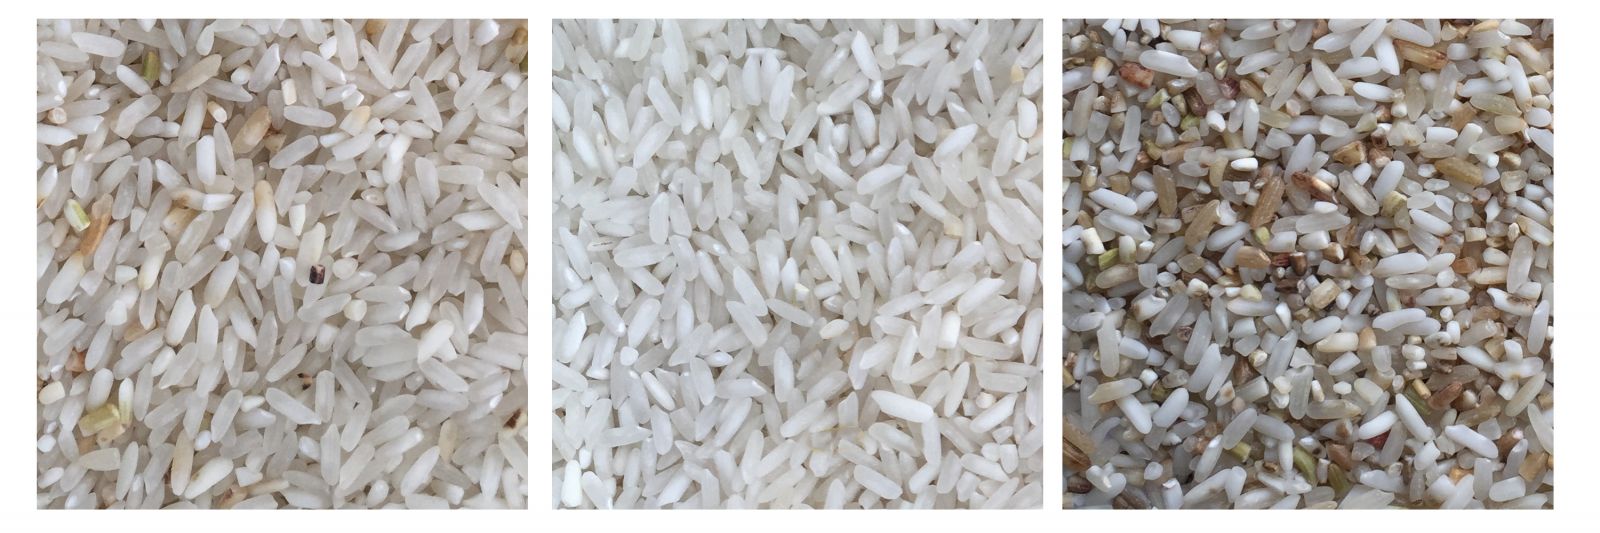 Chế độ tách gạo thông minh